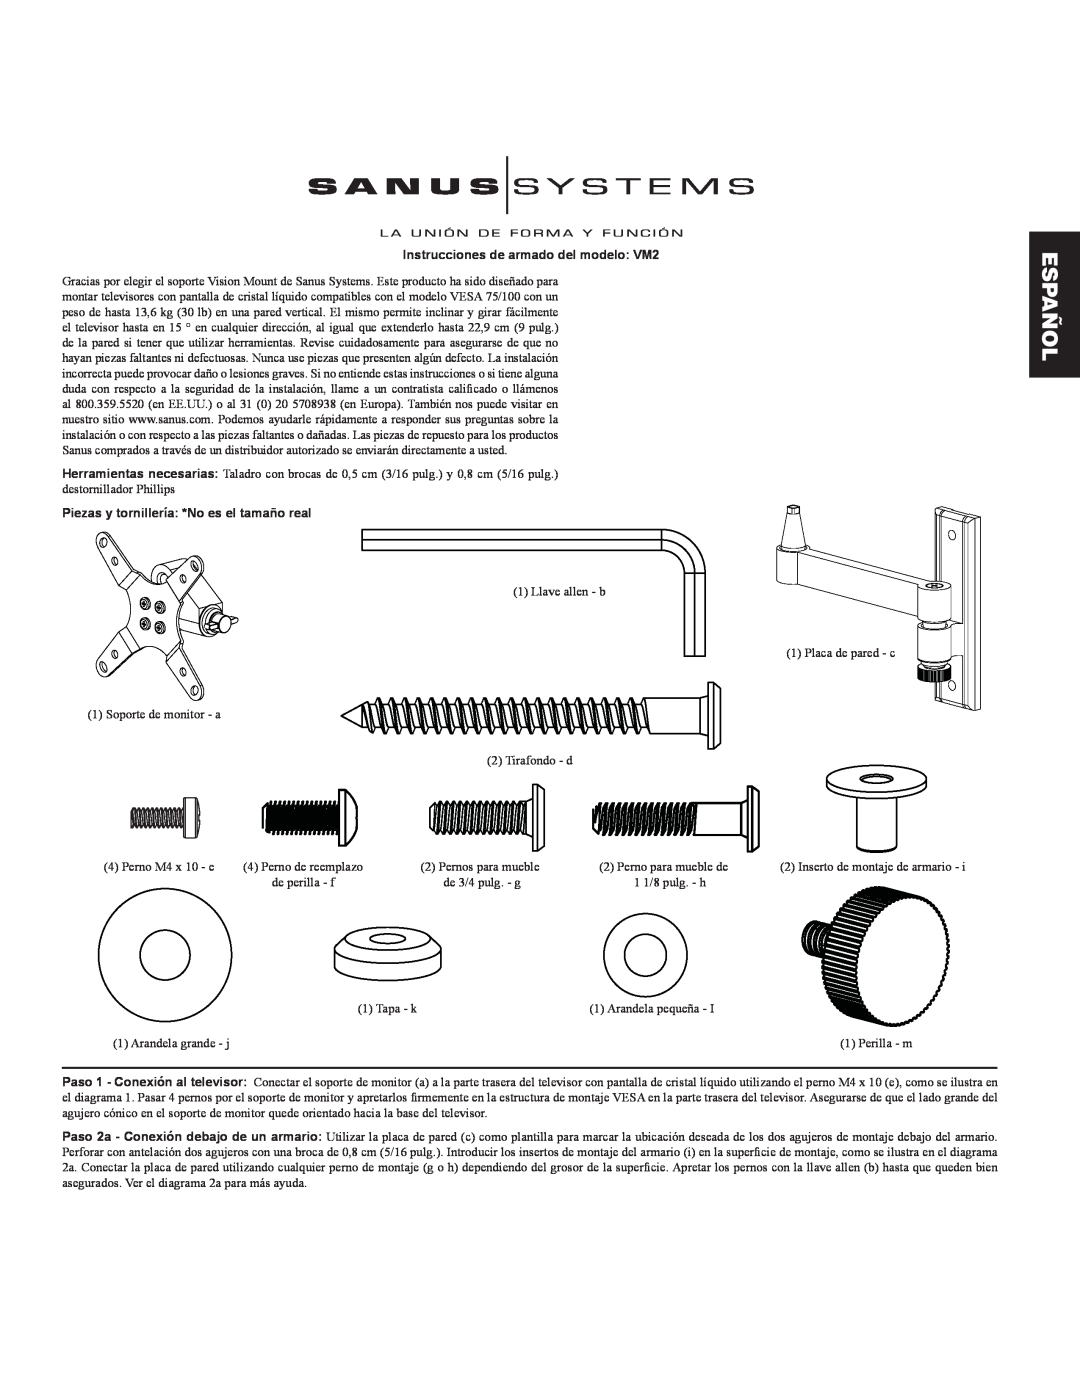 Sanus Systems manual Español, Instrucciones de armado del modelo VM2, Piezas y tornillería *No es el tamaño real 